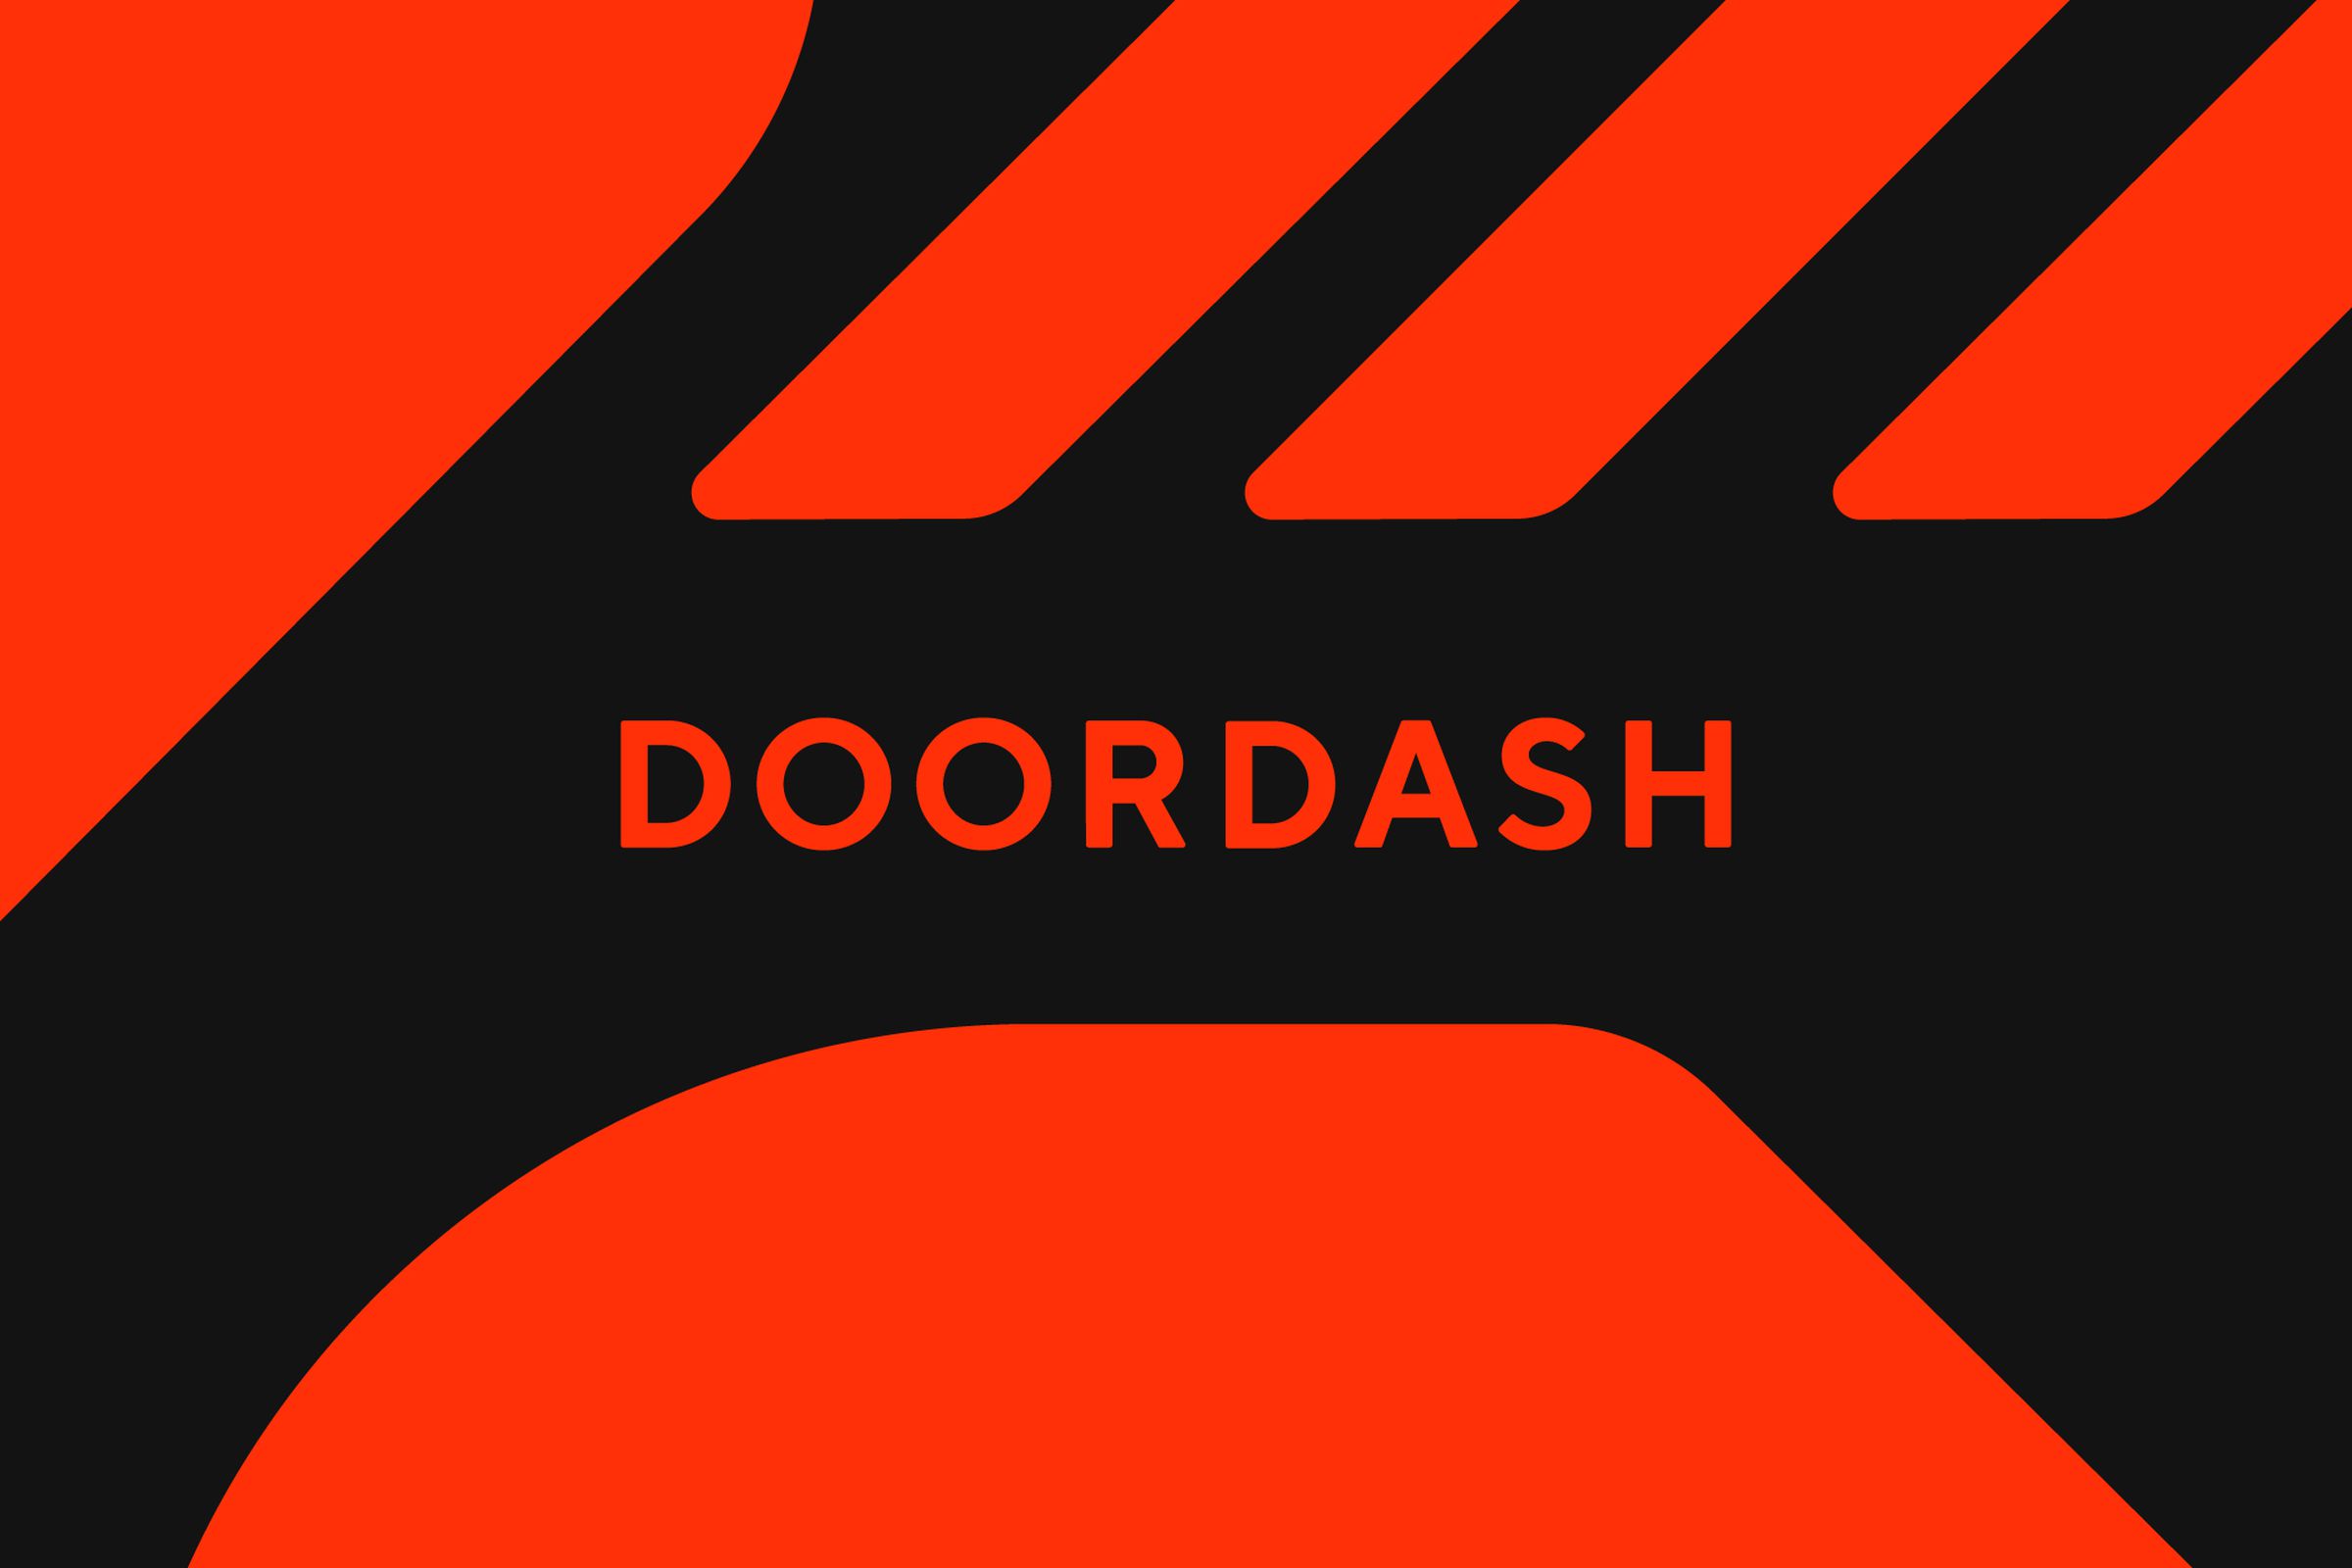 An image showing the DoorDash logo